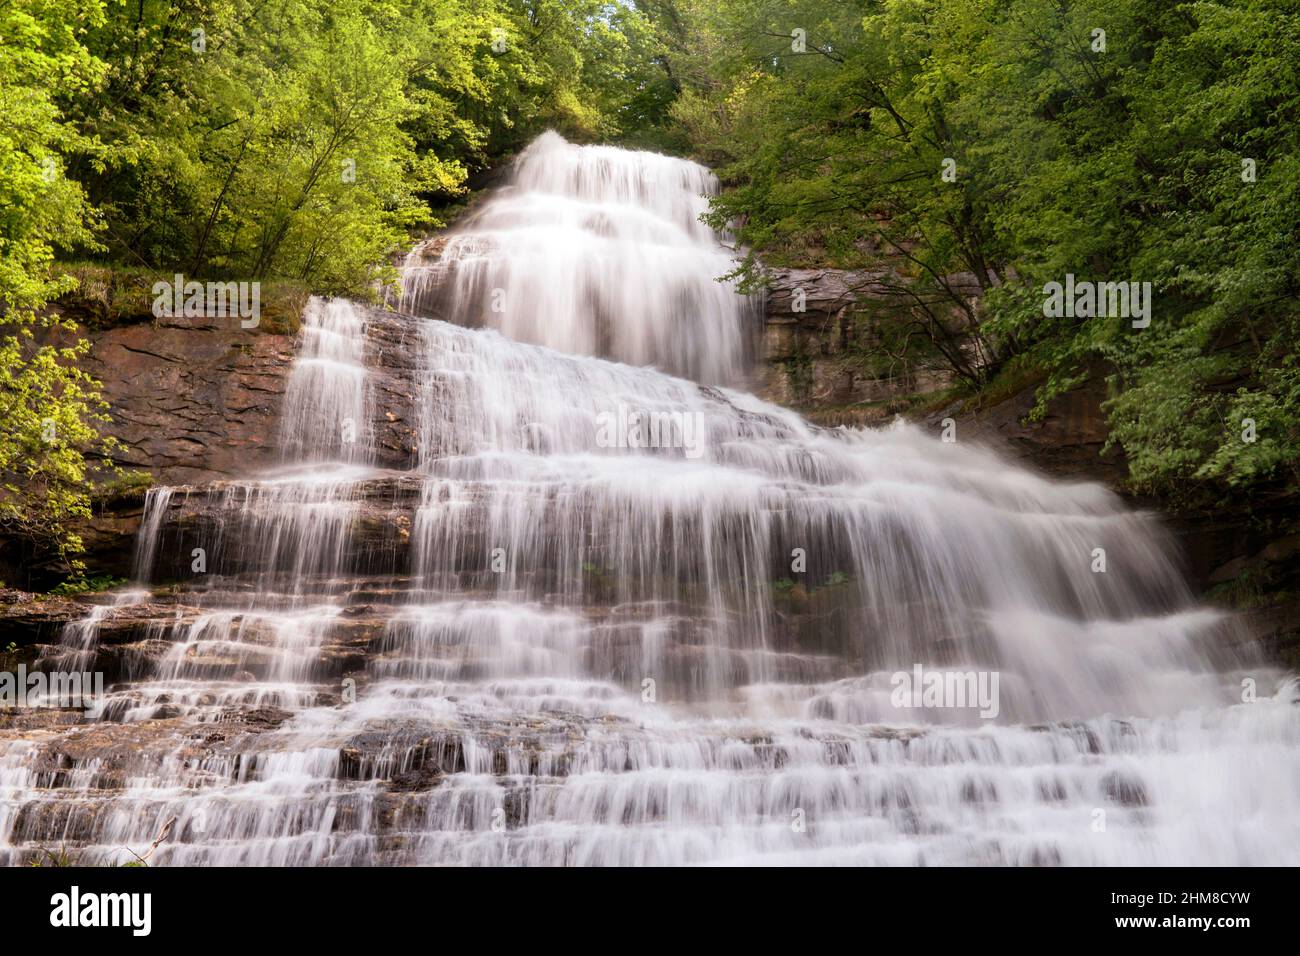 Monti della Laga National Park, Prata Falls, Acquasanta Terme, Marche, Italy, Stock Photo